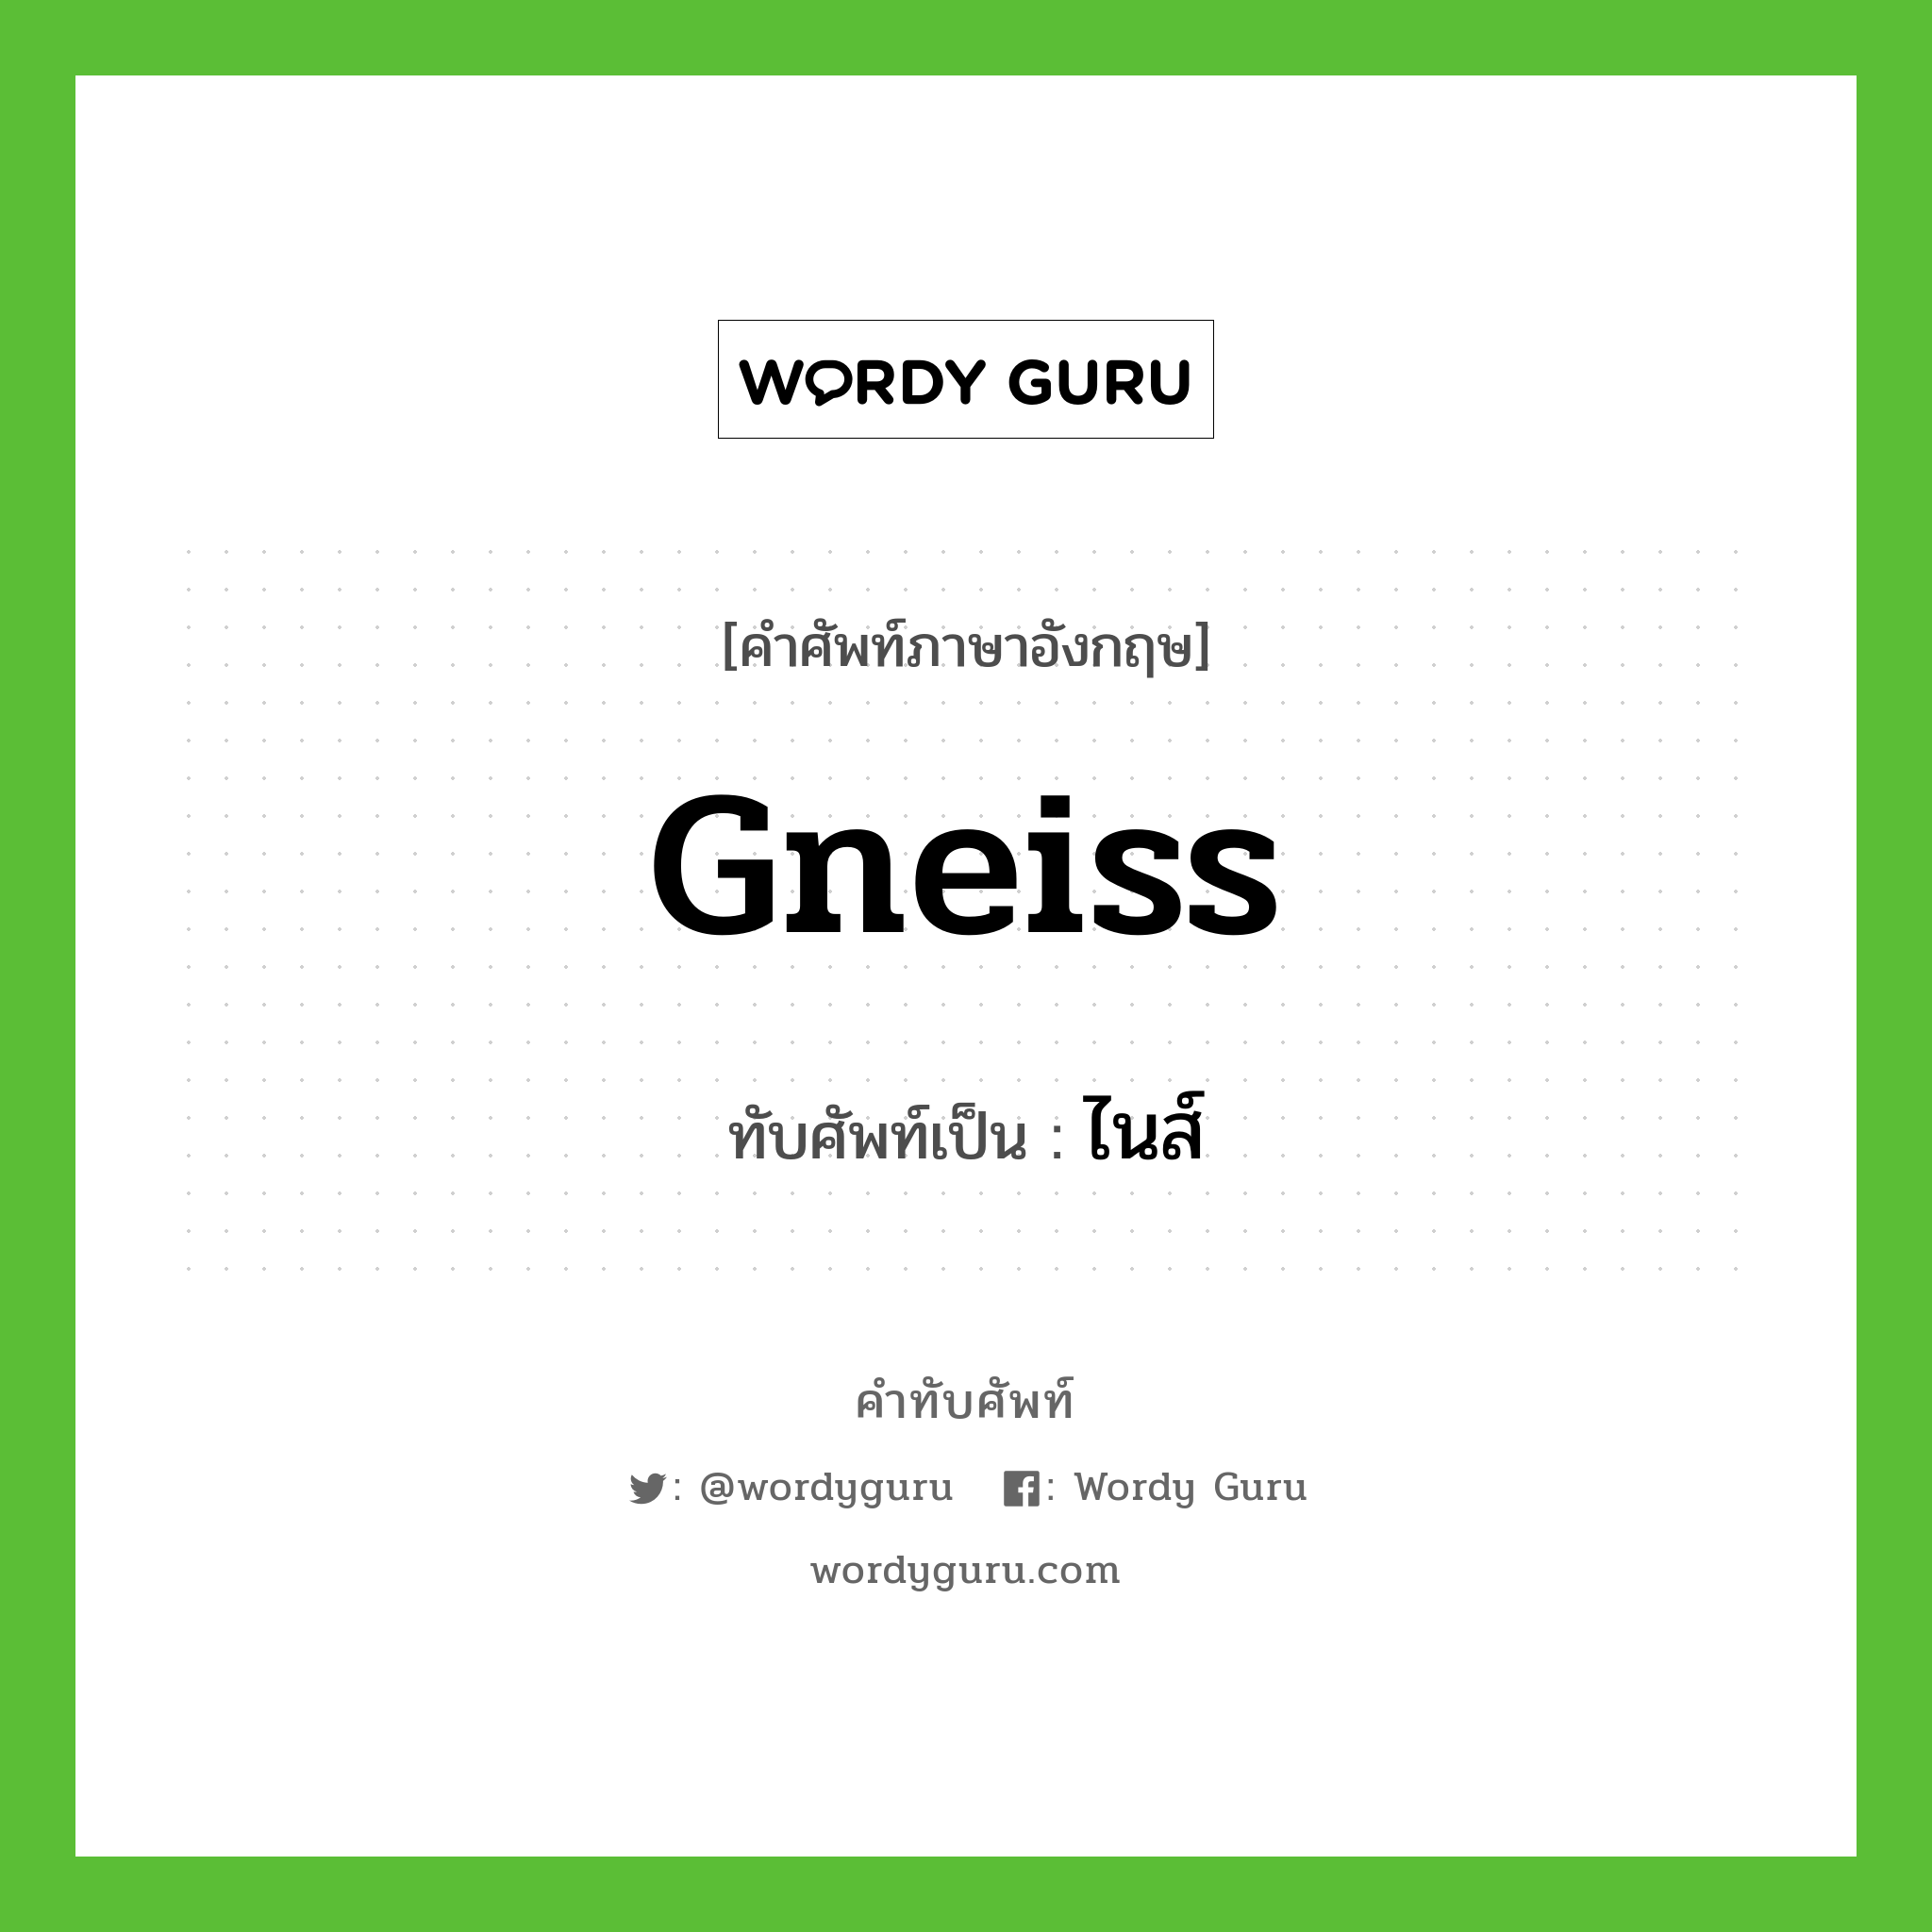 gneiss เขียนเป็นคำไทยว่าอะไร?, คำศัพท์ภาษาอังกฤษ gneiss ทับศัพท์เป็น ไนส์